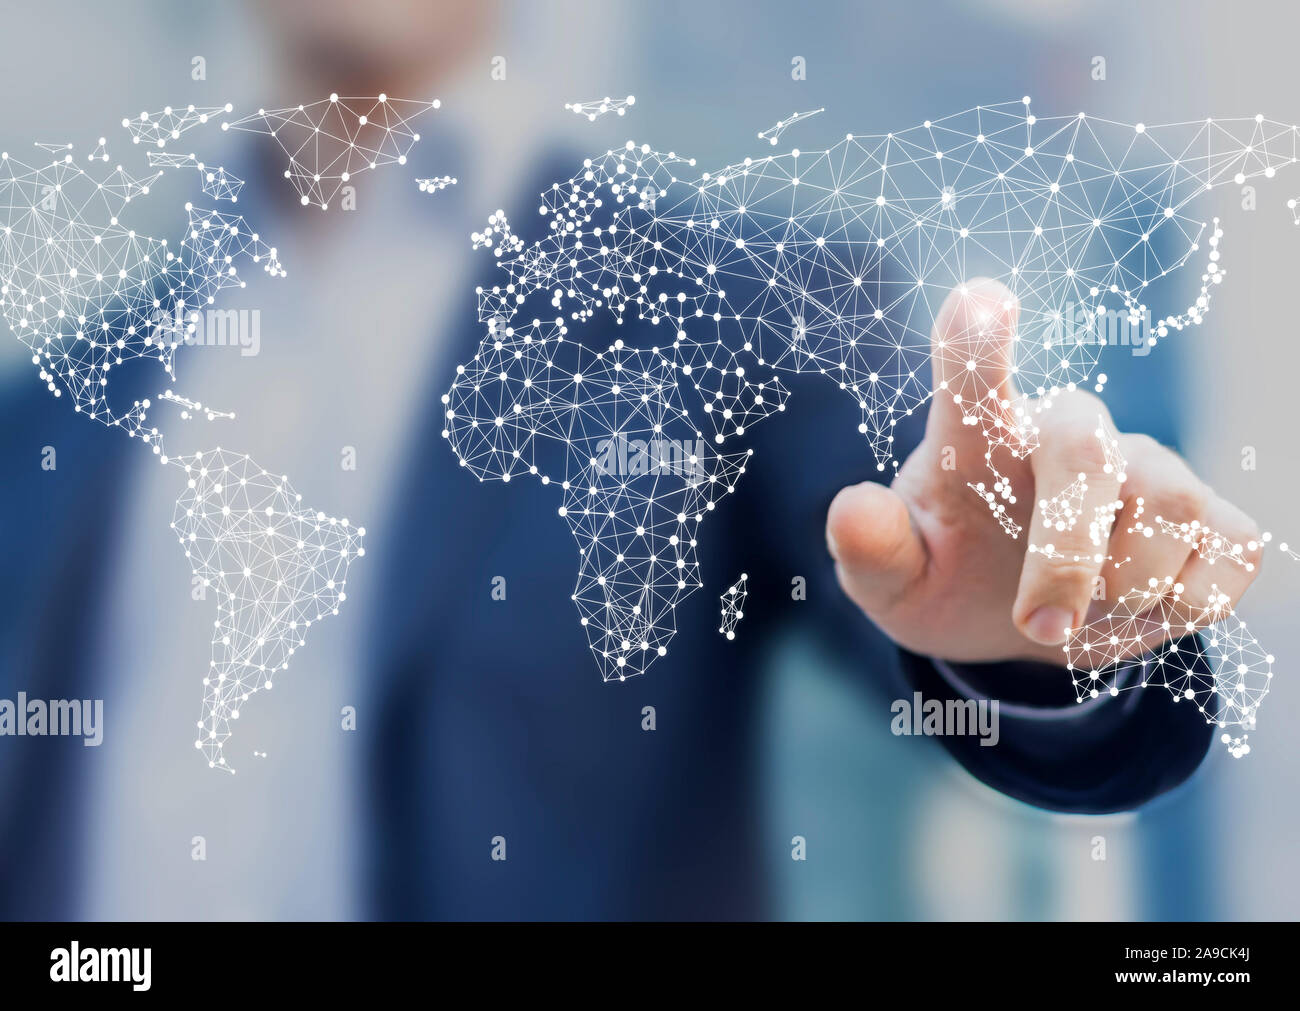 Global Business und Finanzen Konzept mit Geschäftsmann berühren Weltkarte mit angeschlossenen Punkte in der Netzwerkarchitektur für Telekommunikation, Internet von Stockfoto